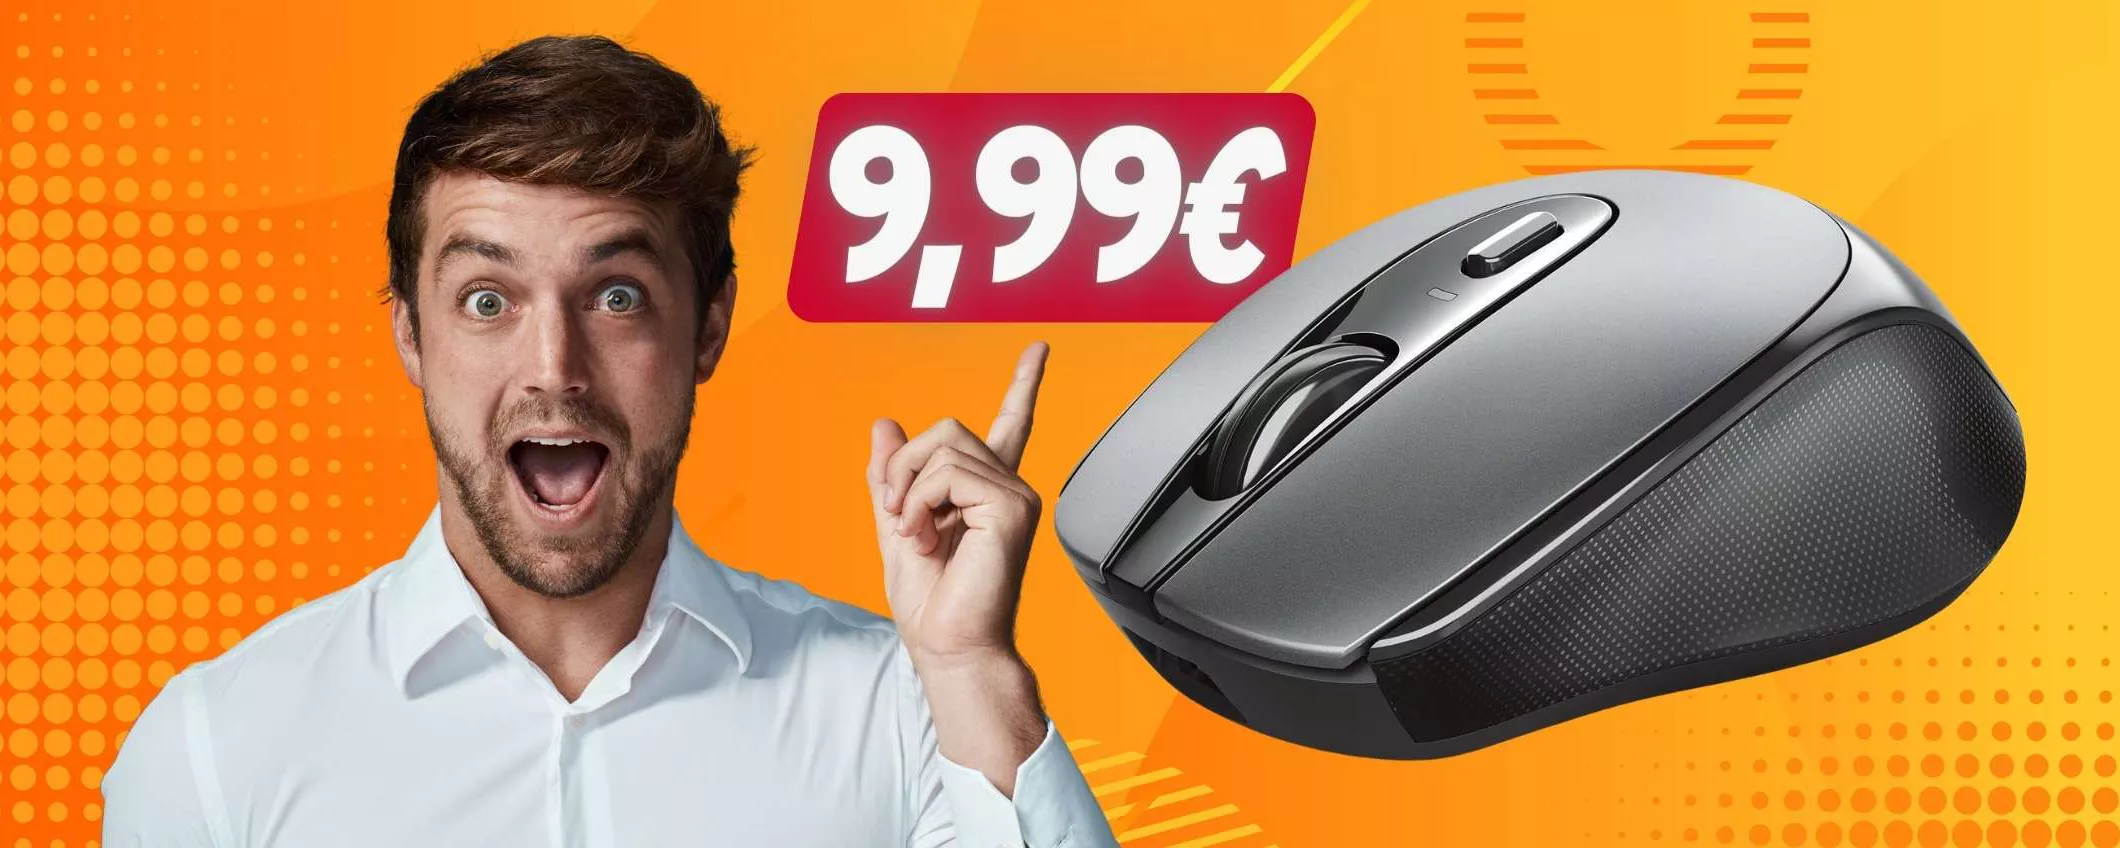 Solo 9,99€ per il mouse wireless Trust: SUPER PROMO Amazon